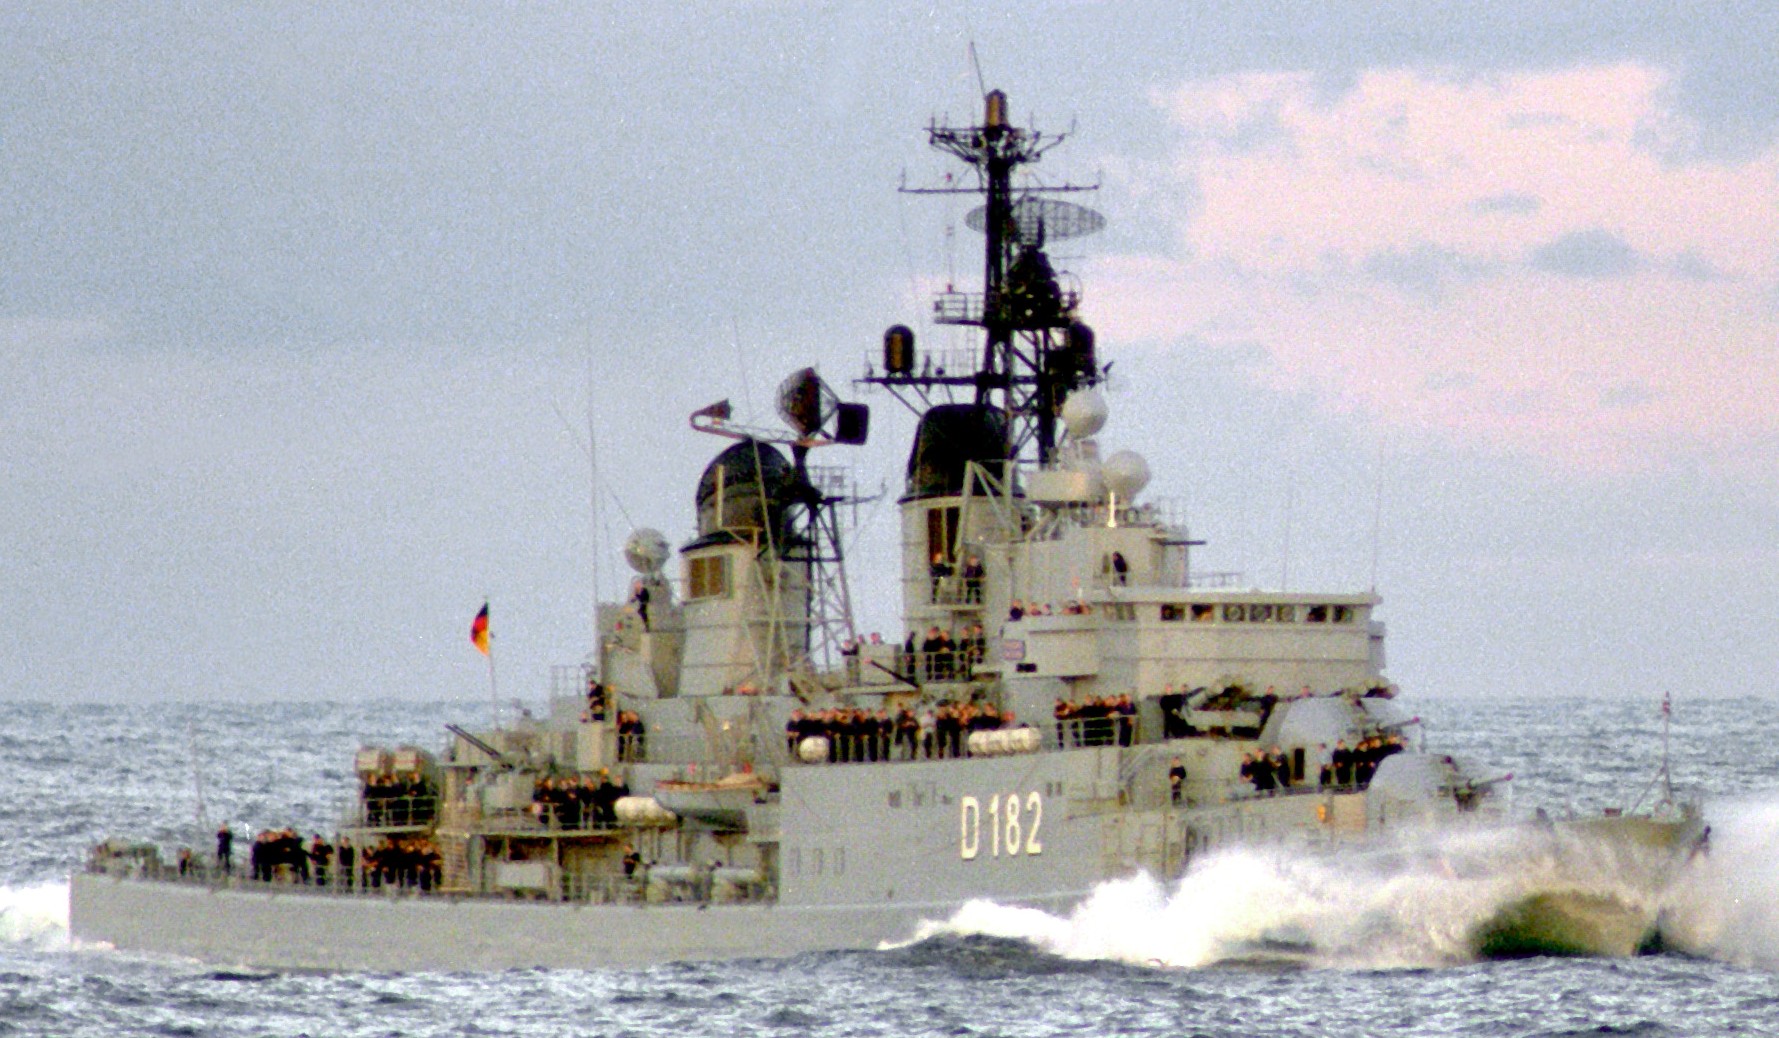 d-182 fgs schleswig-holstein type 101a hamburg class destroyer german navy 05